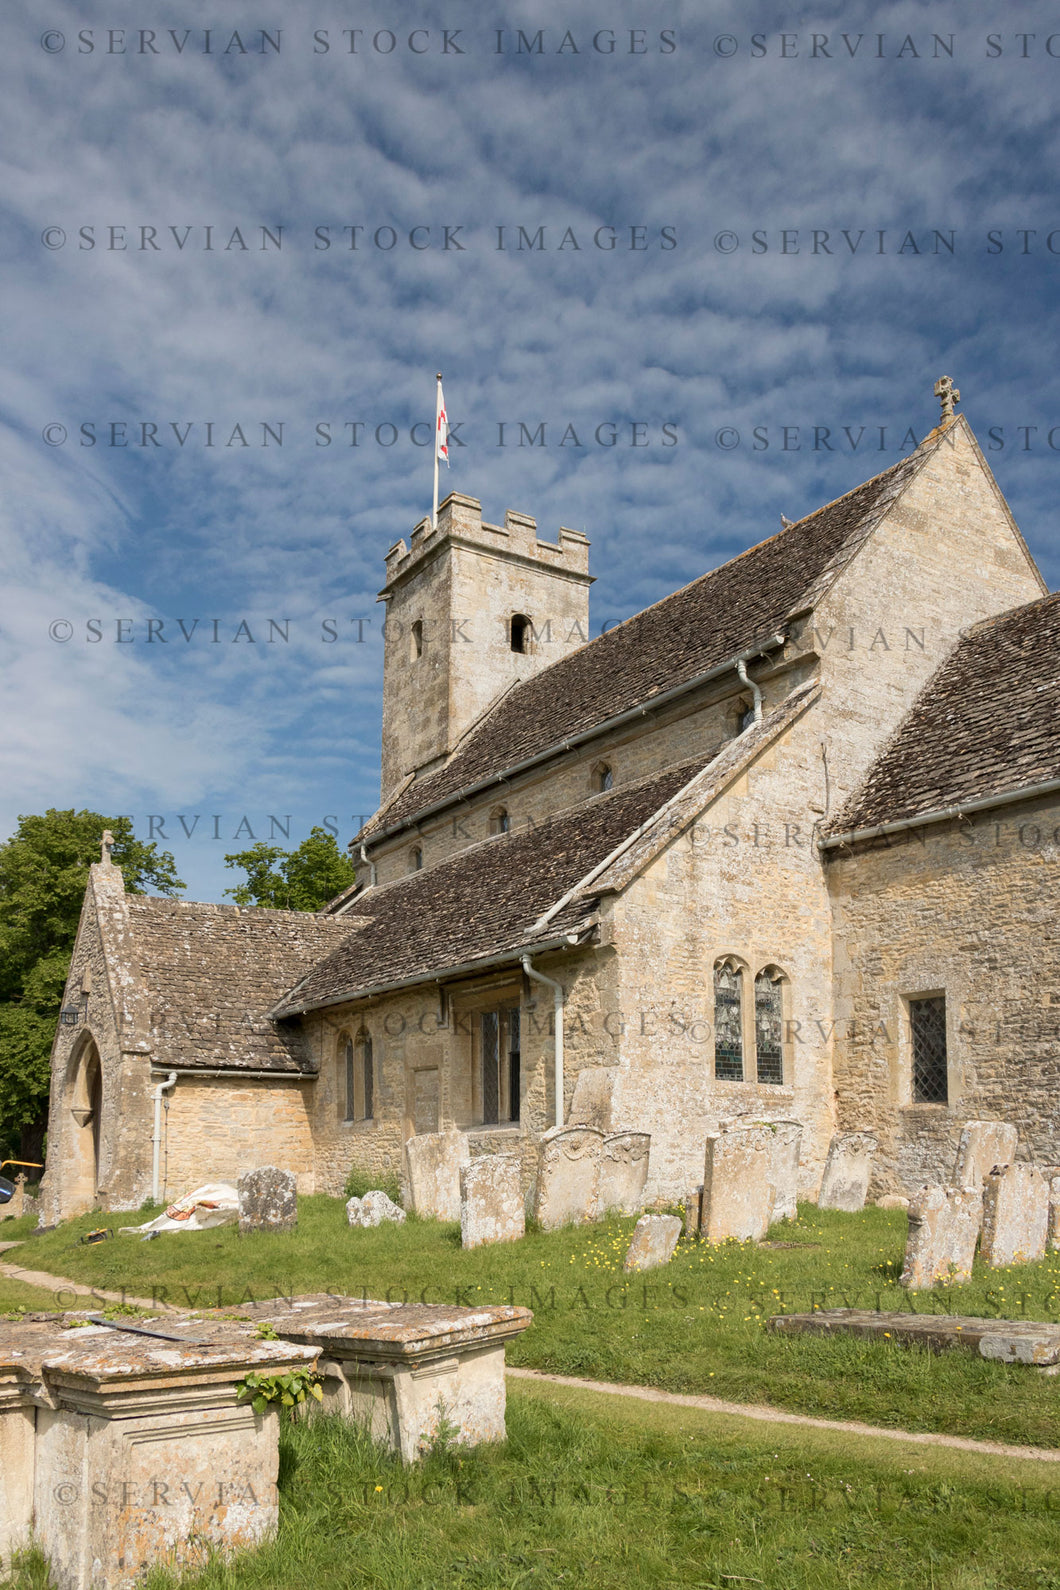 Historical building - Church exterior, UK (Nick 2405)